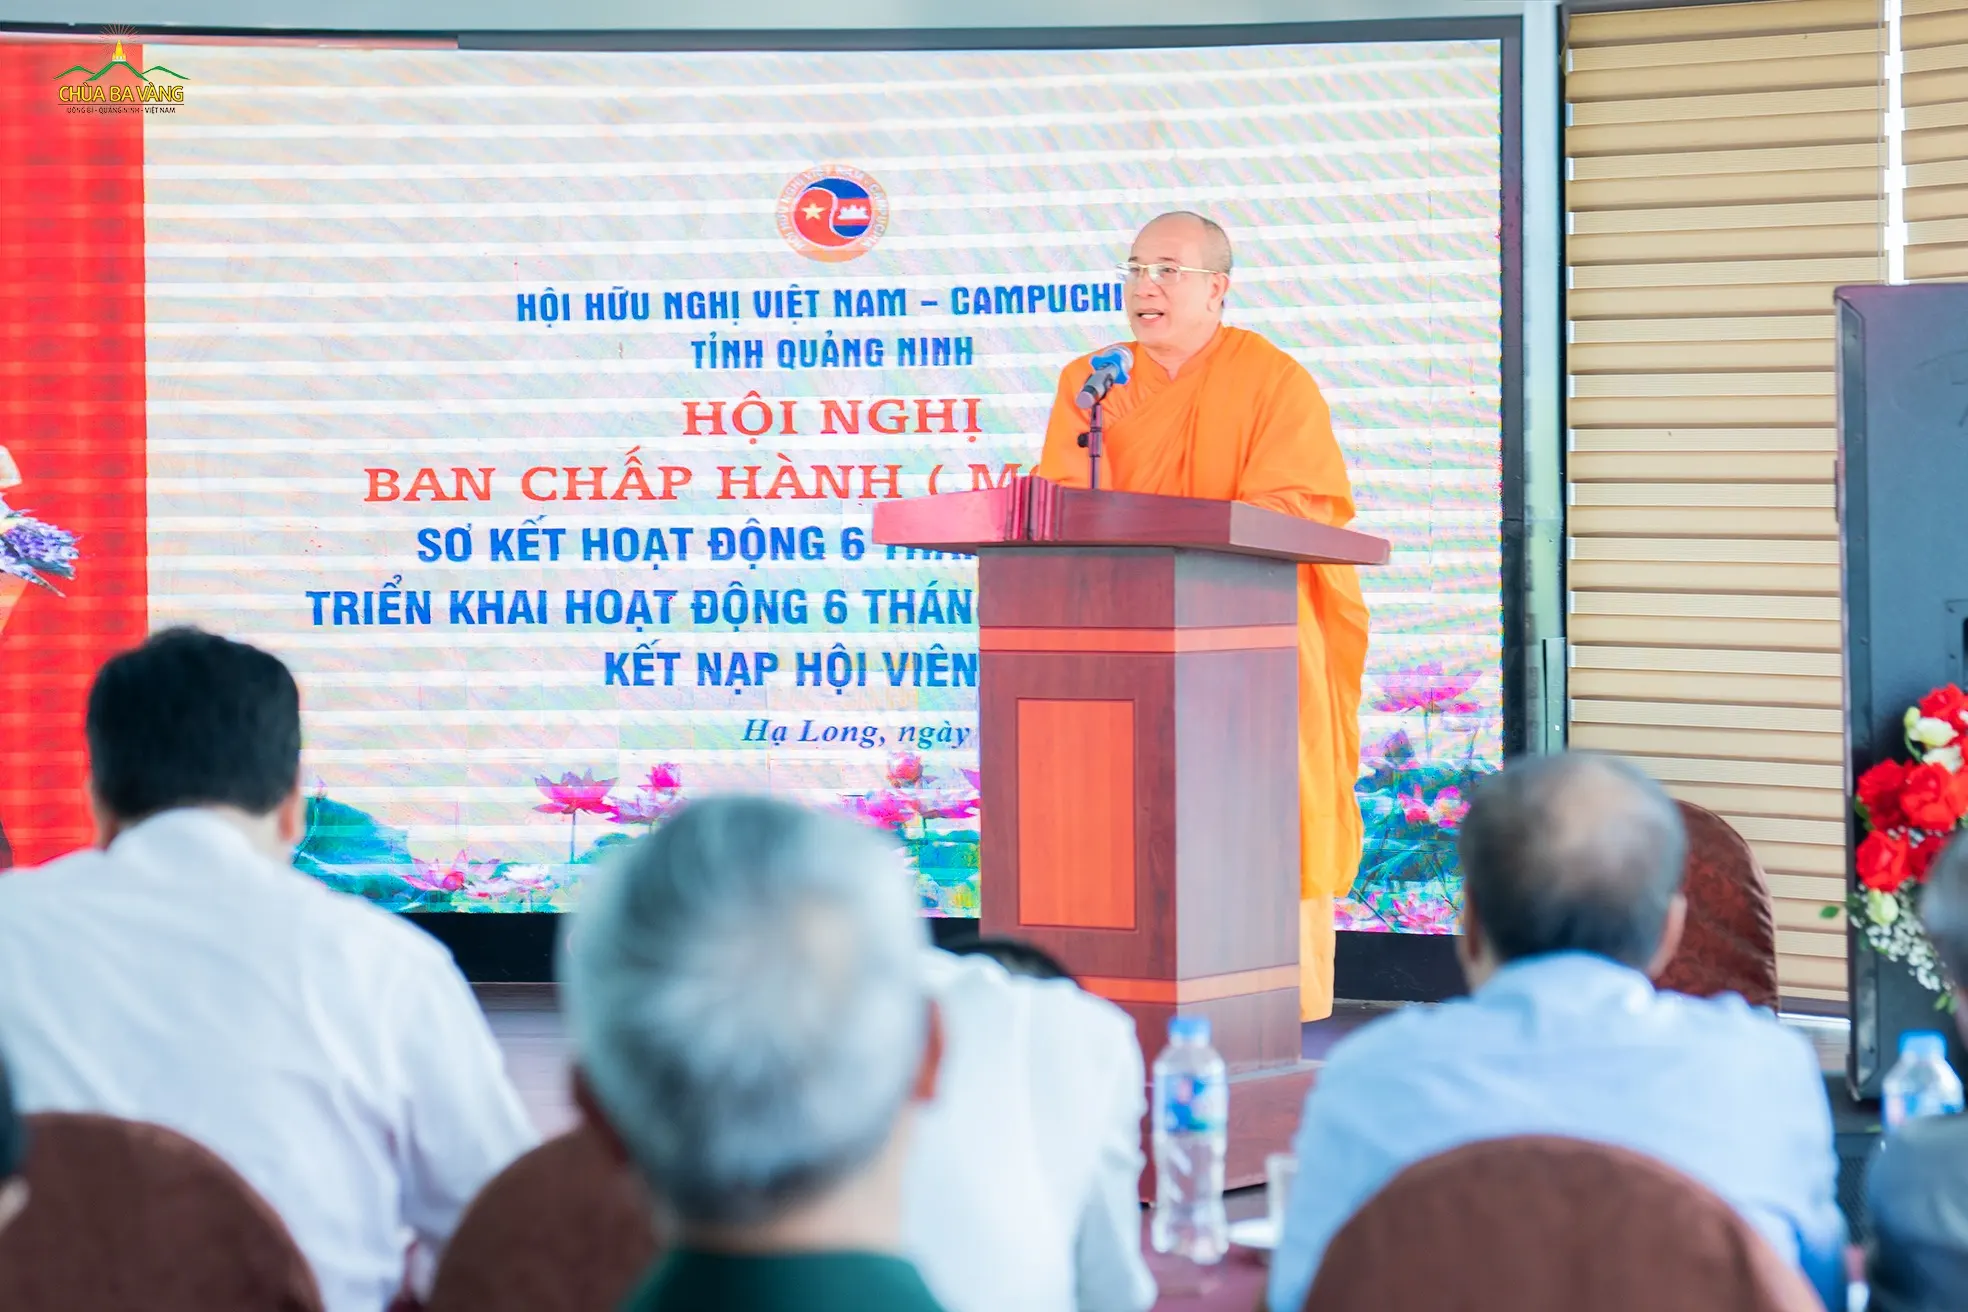 Tham dự Hội nghị, Sư Phụ Thích Trúc Thái Minh đã phát biểu về việc duy trì và phát triển hội viên của Hội, phát triển quan hệ đối ngoại nhân dân để tăng cường quan hệ hữu nghị, đoàn kết giữa Việt Nam và các nước trong khu vực